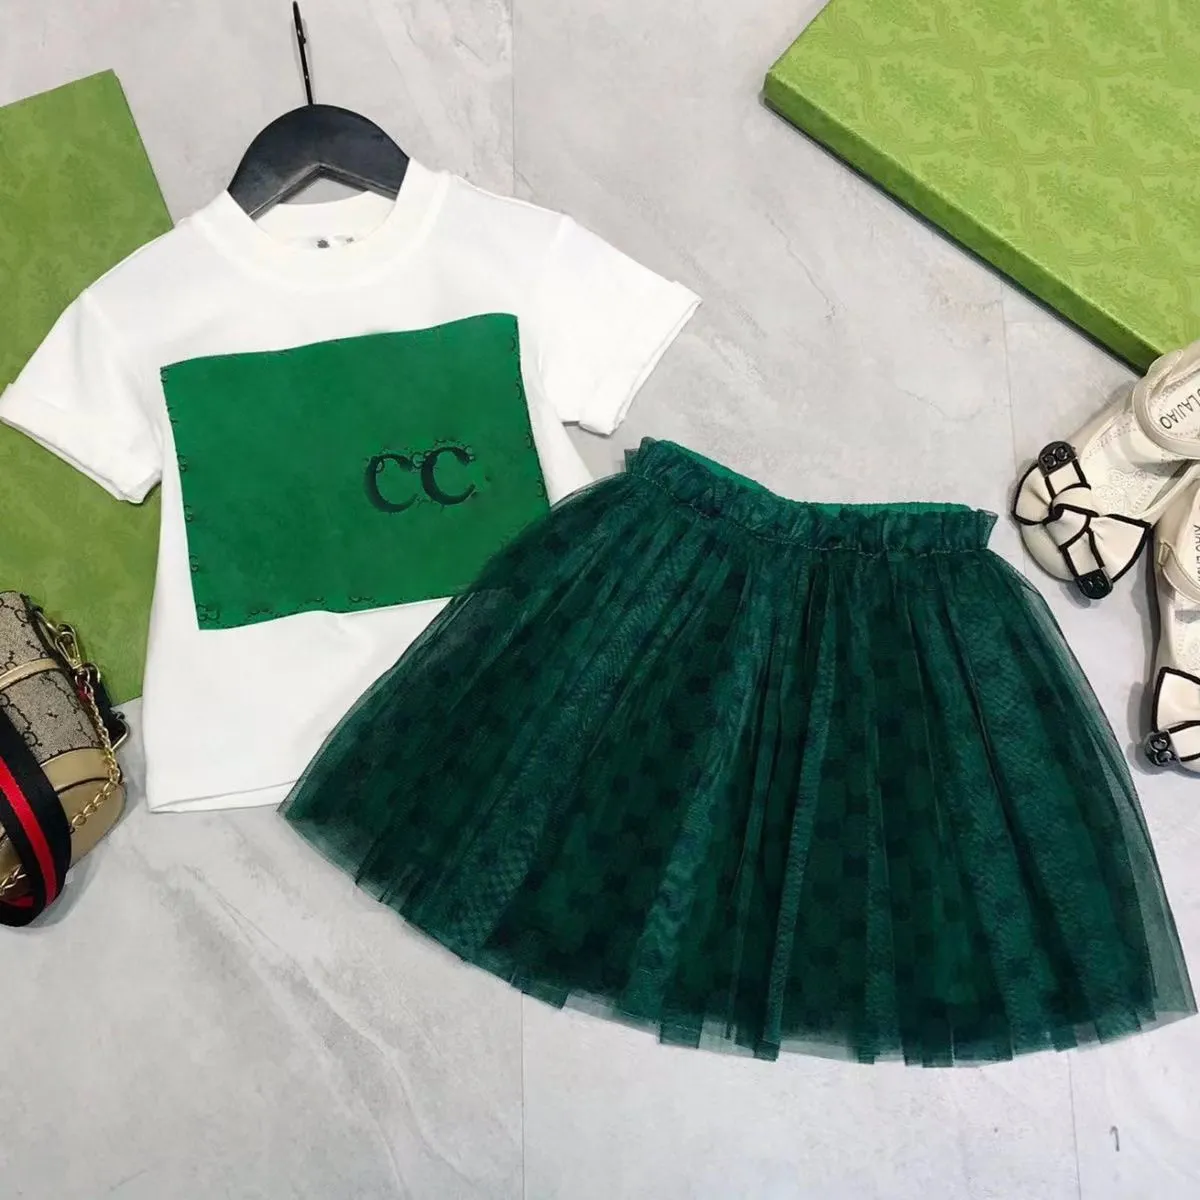 Lüks Tasarımcı Kids T-Shirt Peçe Etek Moda İngiliz Moda Markası Yaz Çocuk Hazineleri ve Kızlar Pamuklu İki Parçalı Lüks Tasarımcı Kapşon Etek